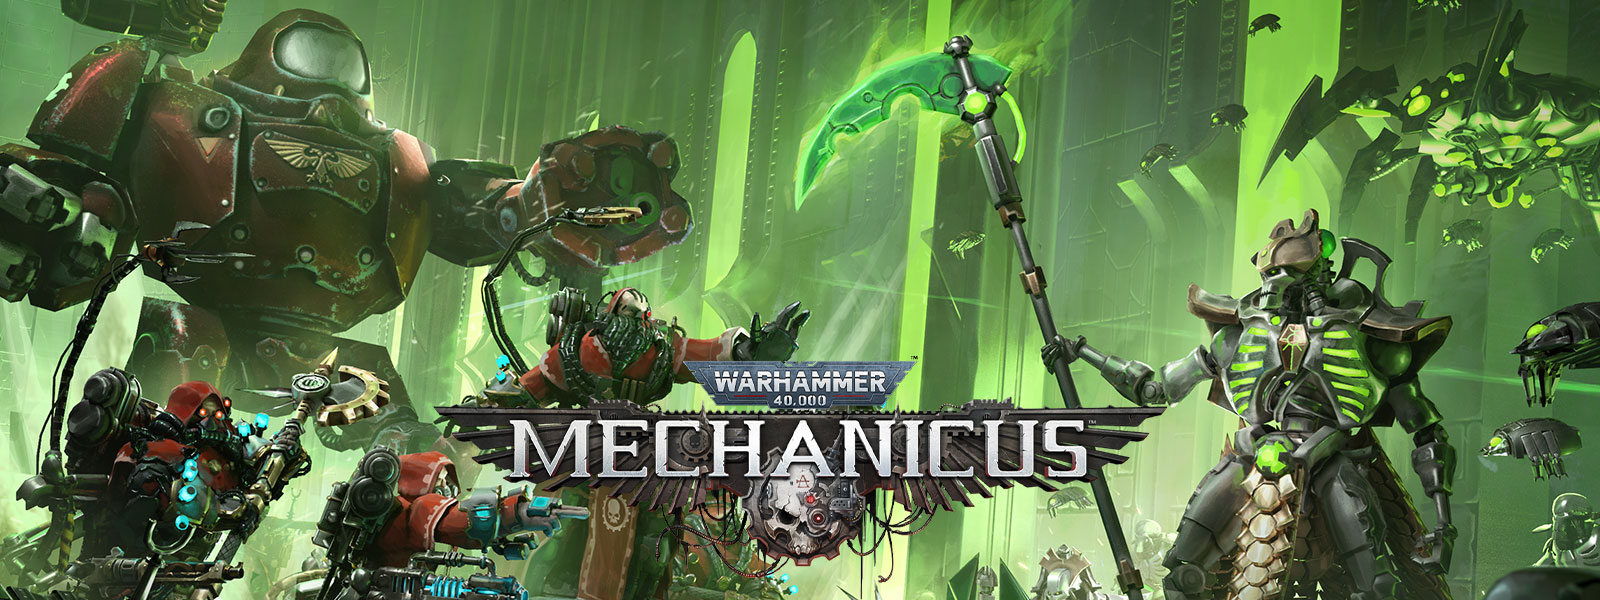 Warhammer 40,000: Mechanicus, Geavanceerde high-tech legers ontmoeten elkaar voor de strijd.